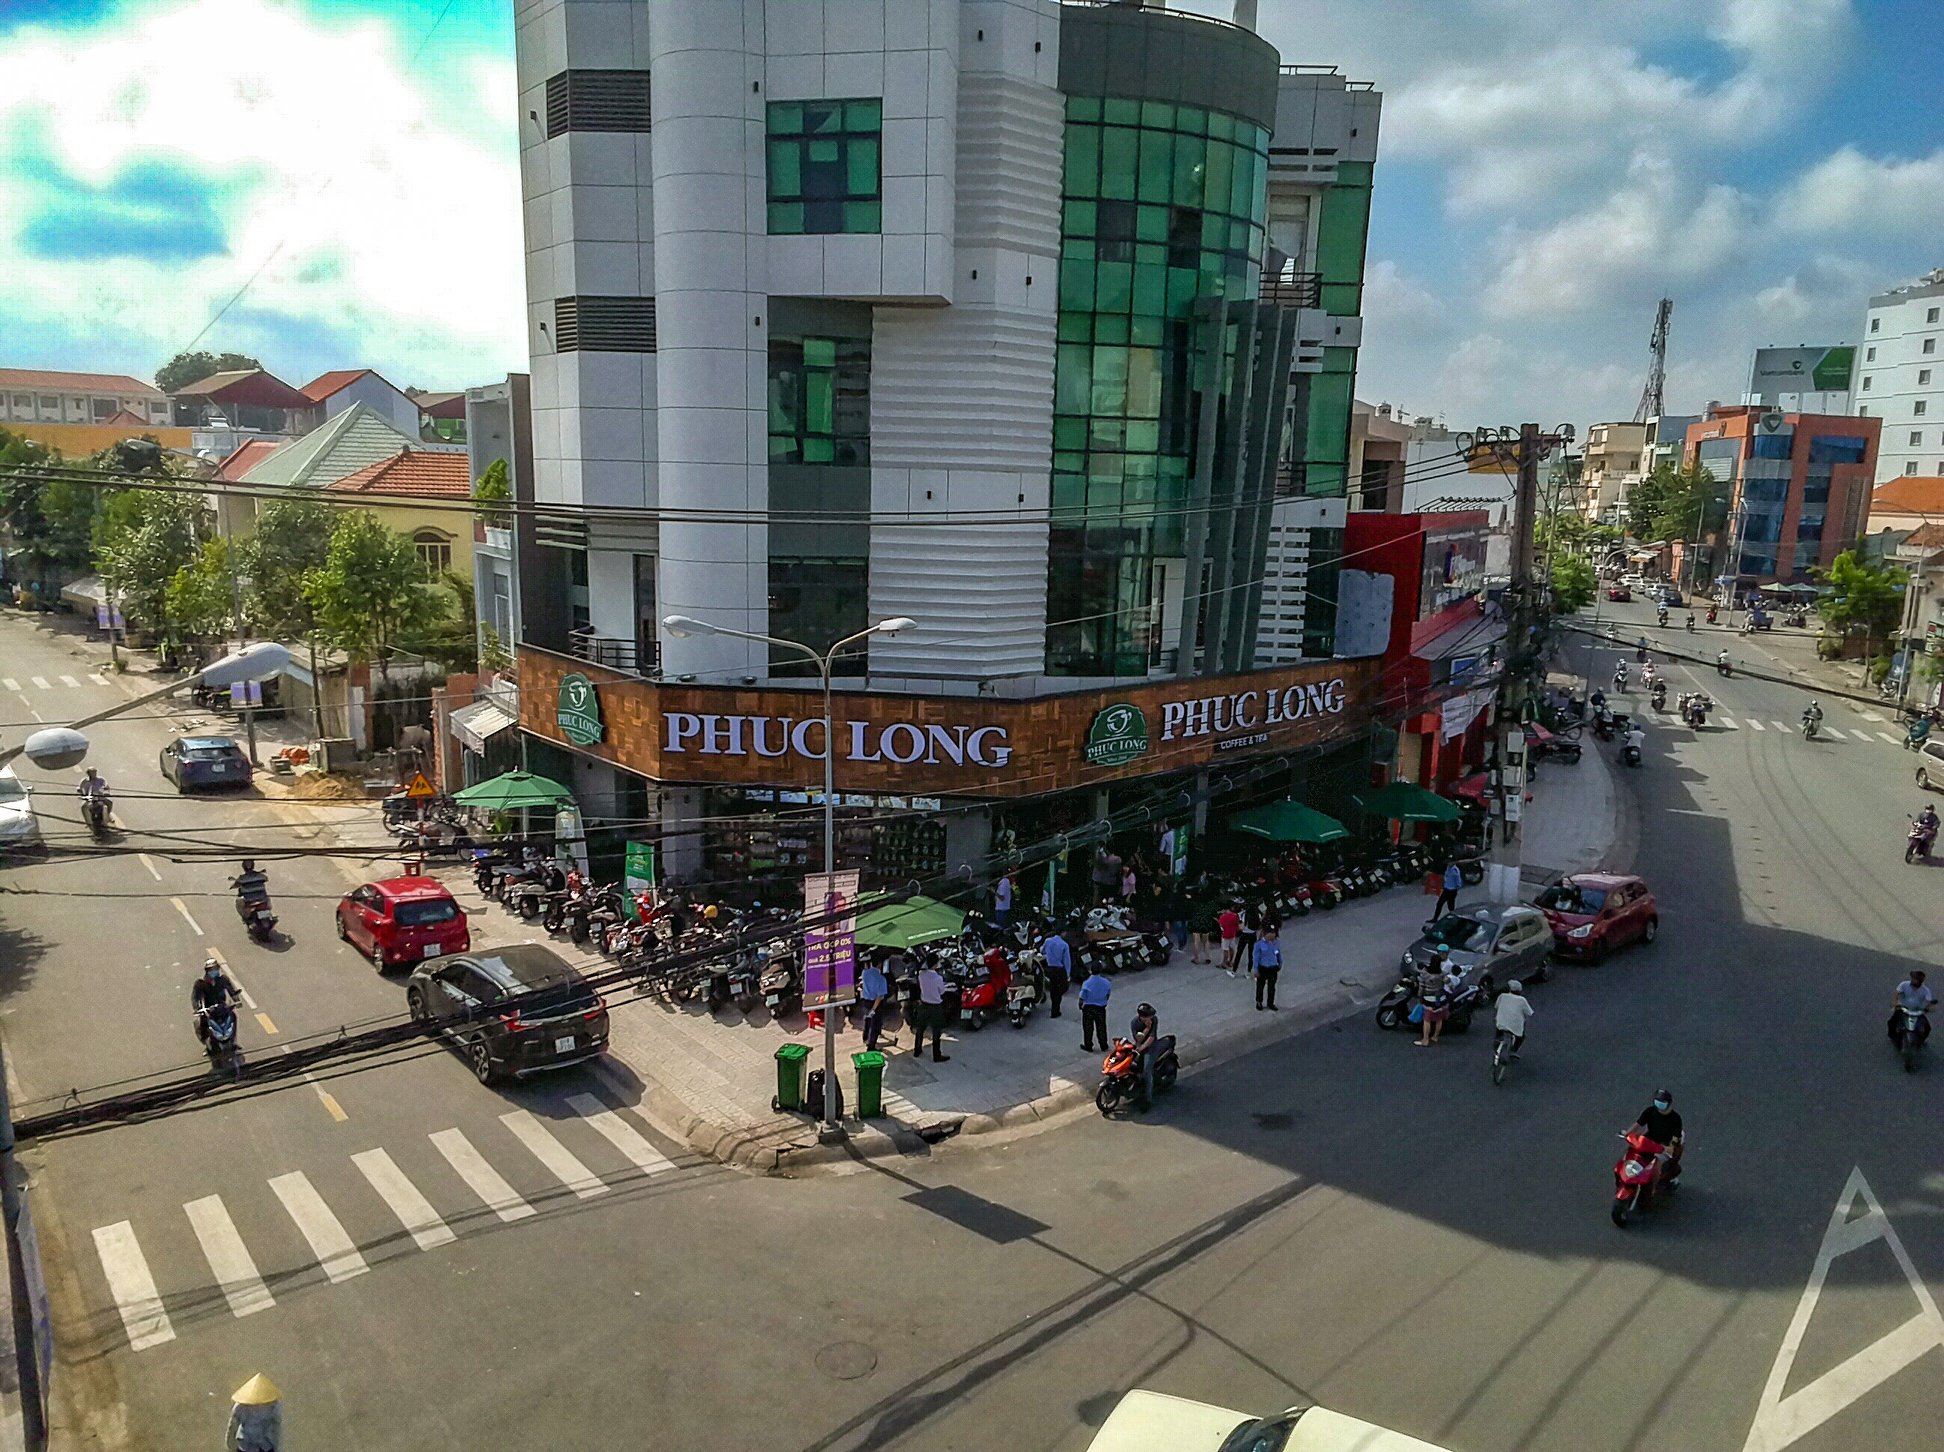 Grand opening Phuc Long Nguyen Dinh Chieu - Binh Duong province